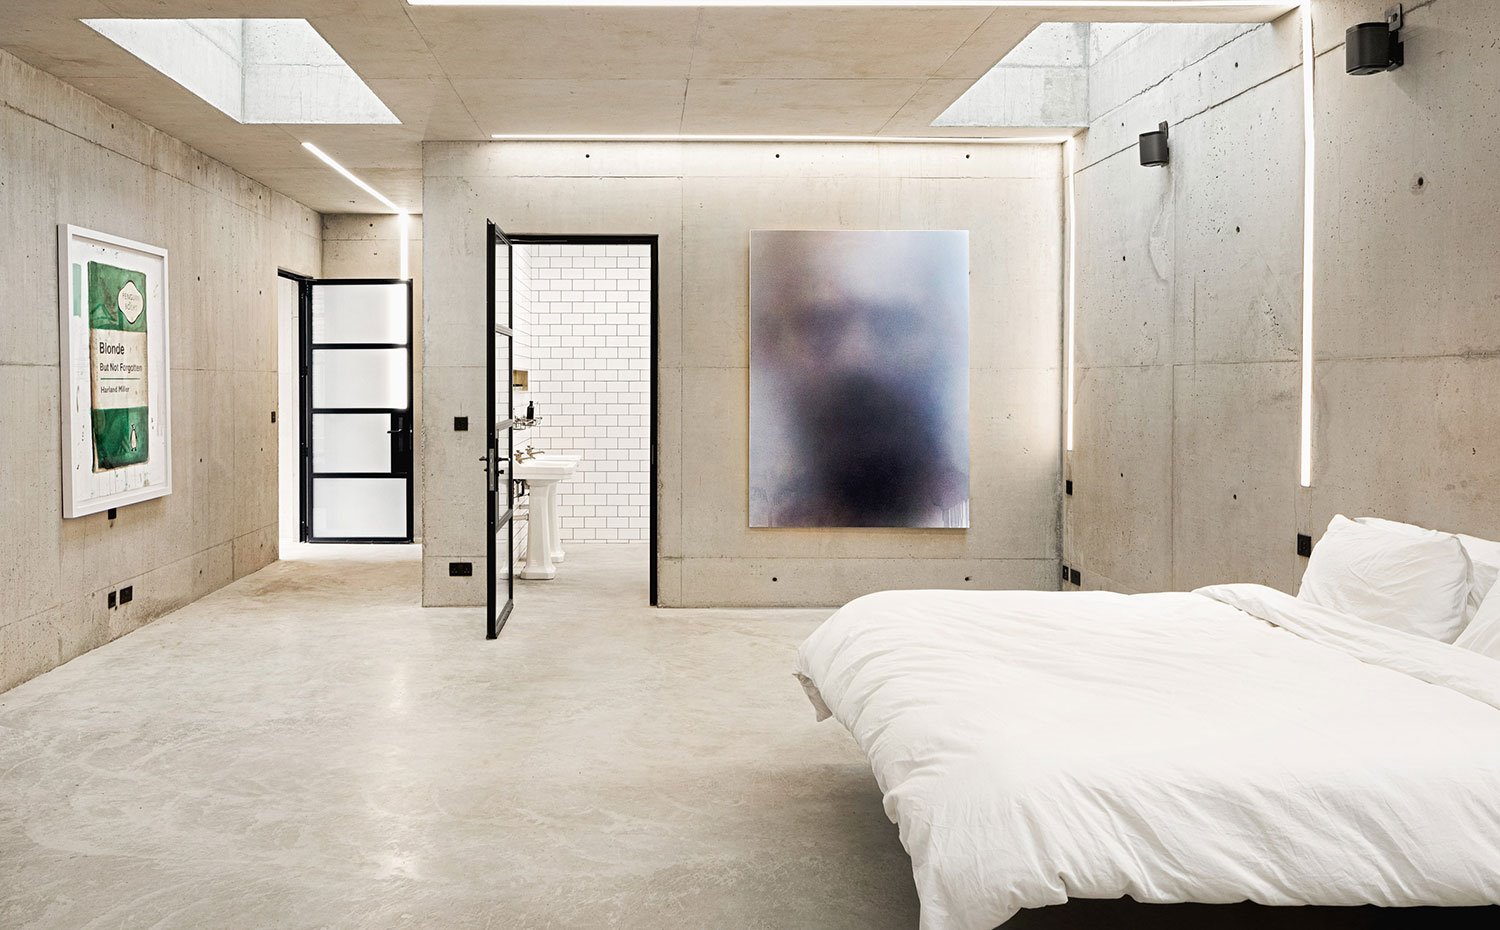 Dormitorio con revestimiento de hormgión, lencería de cama en blanco, puerta perfilería negra y cristal translúcido, claravboya en techo